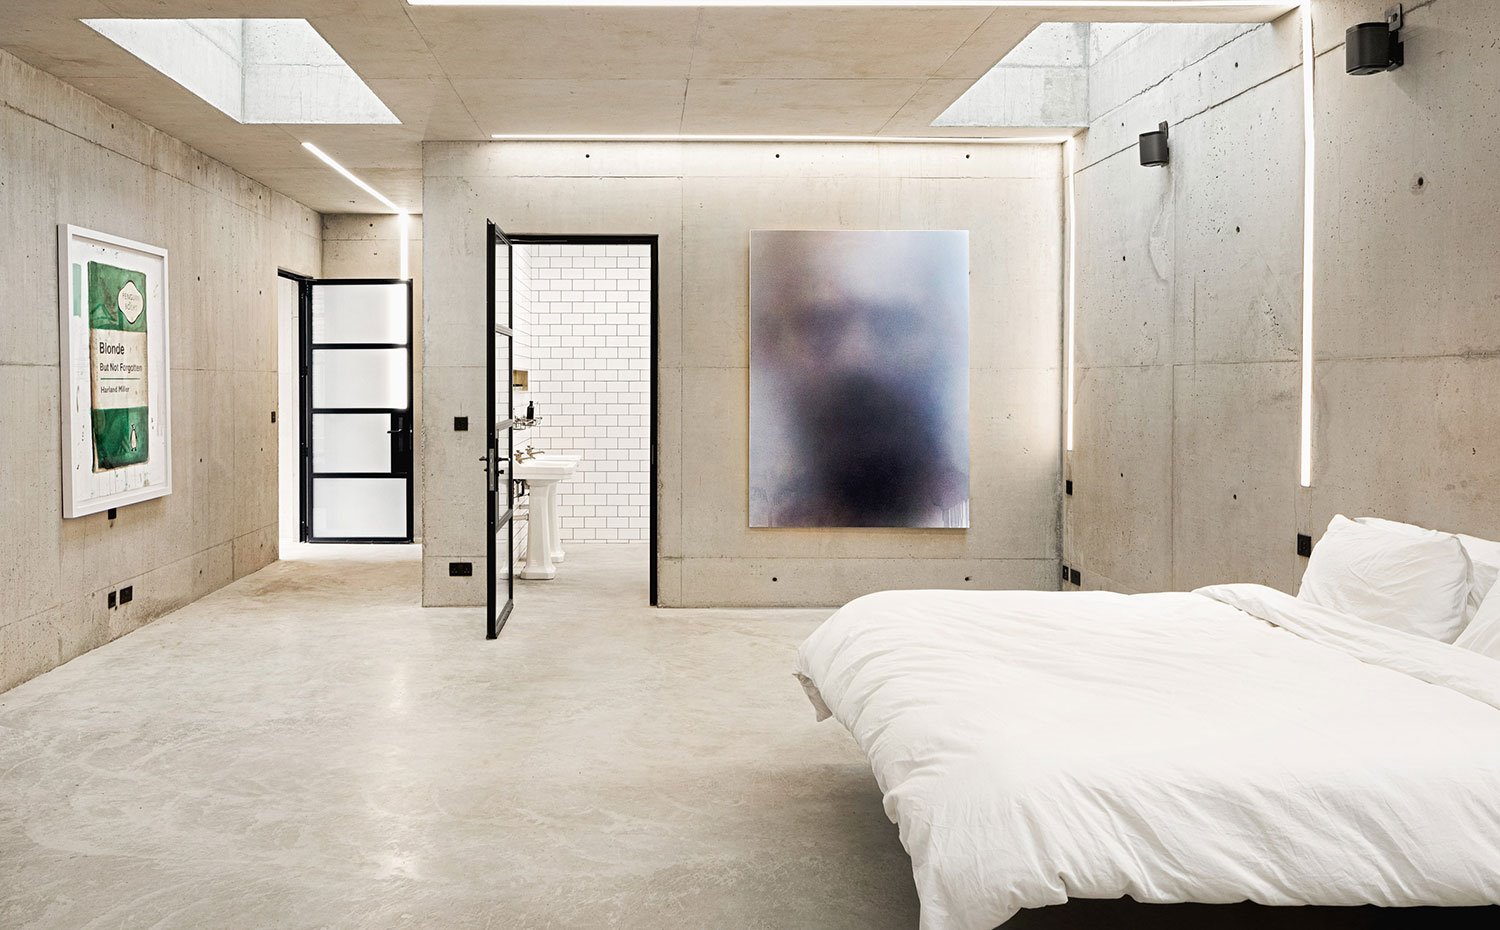 Dormitorio con revestimiento de hormgión, lencería de cama en blanco, puerta perfilería negra y cristal translúcido, claravboya en techo